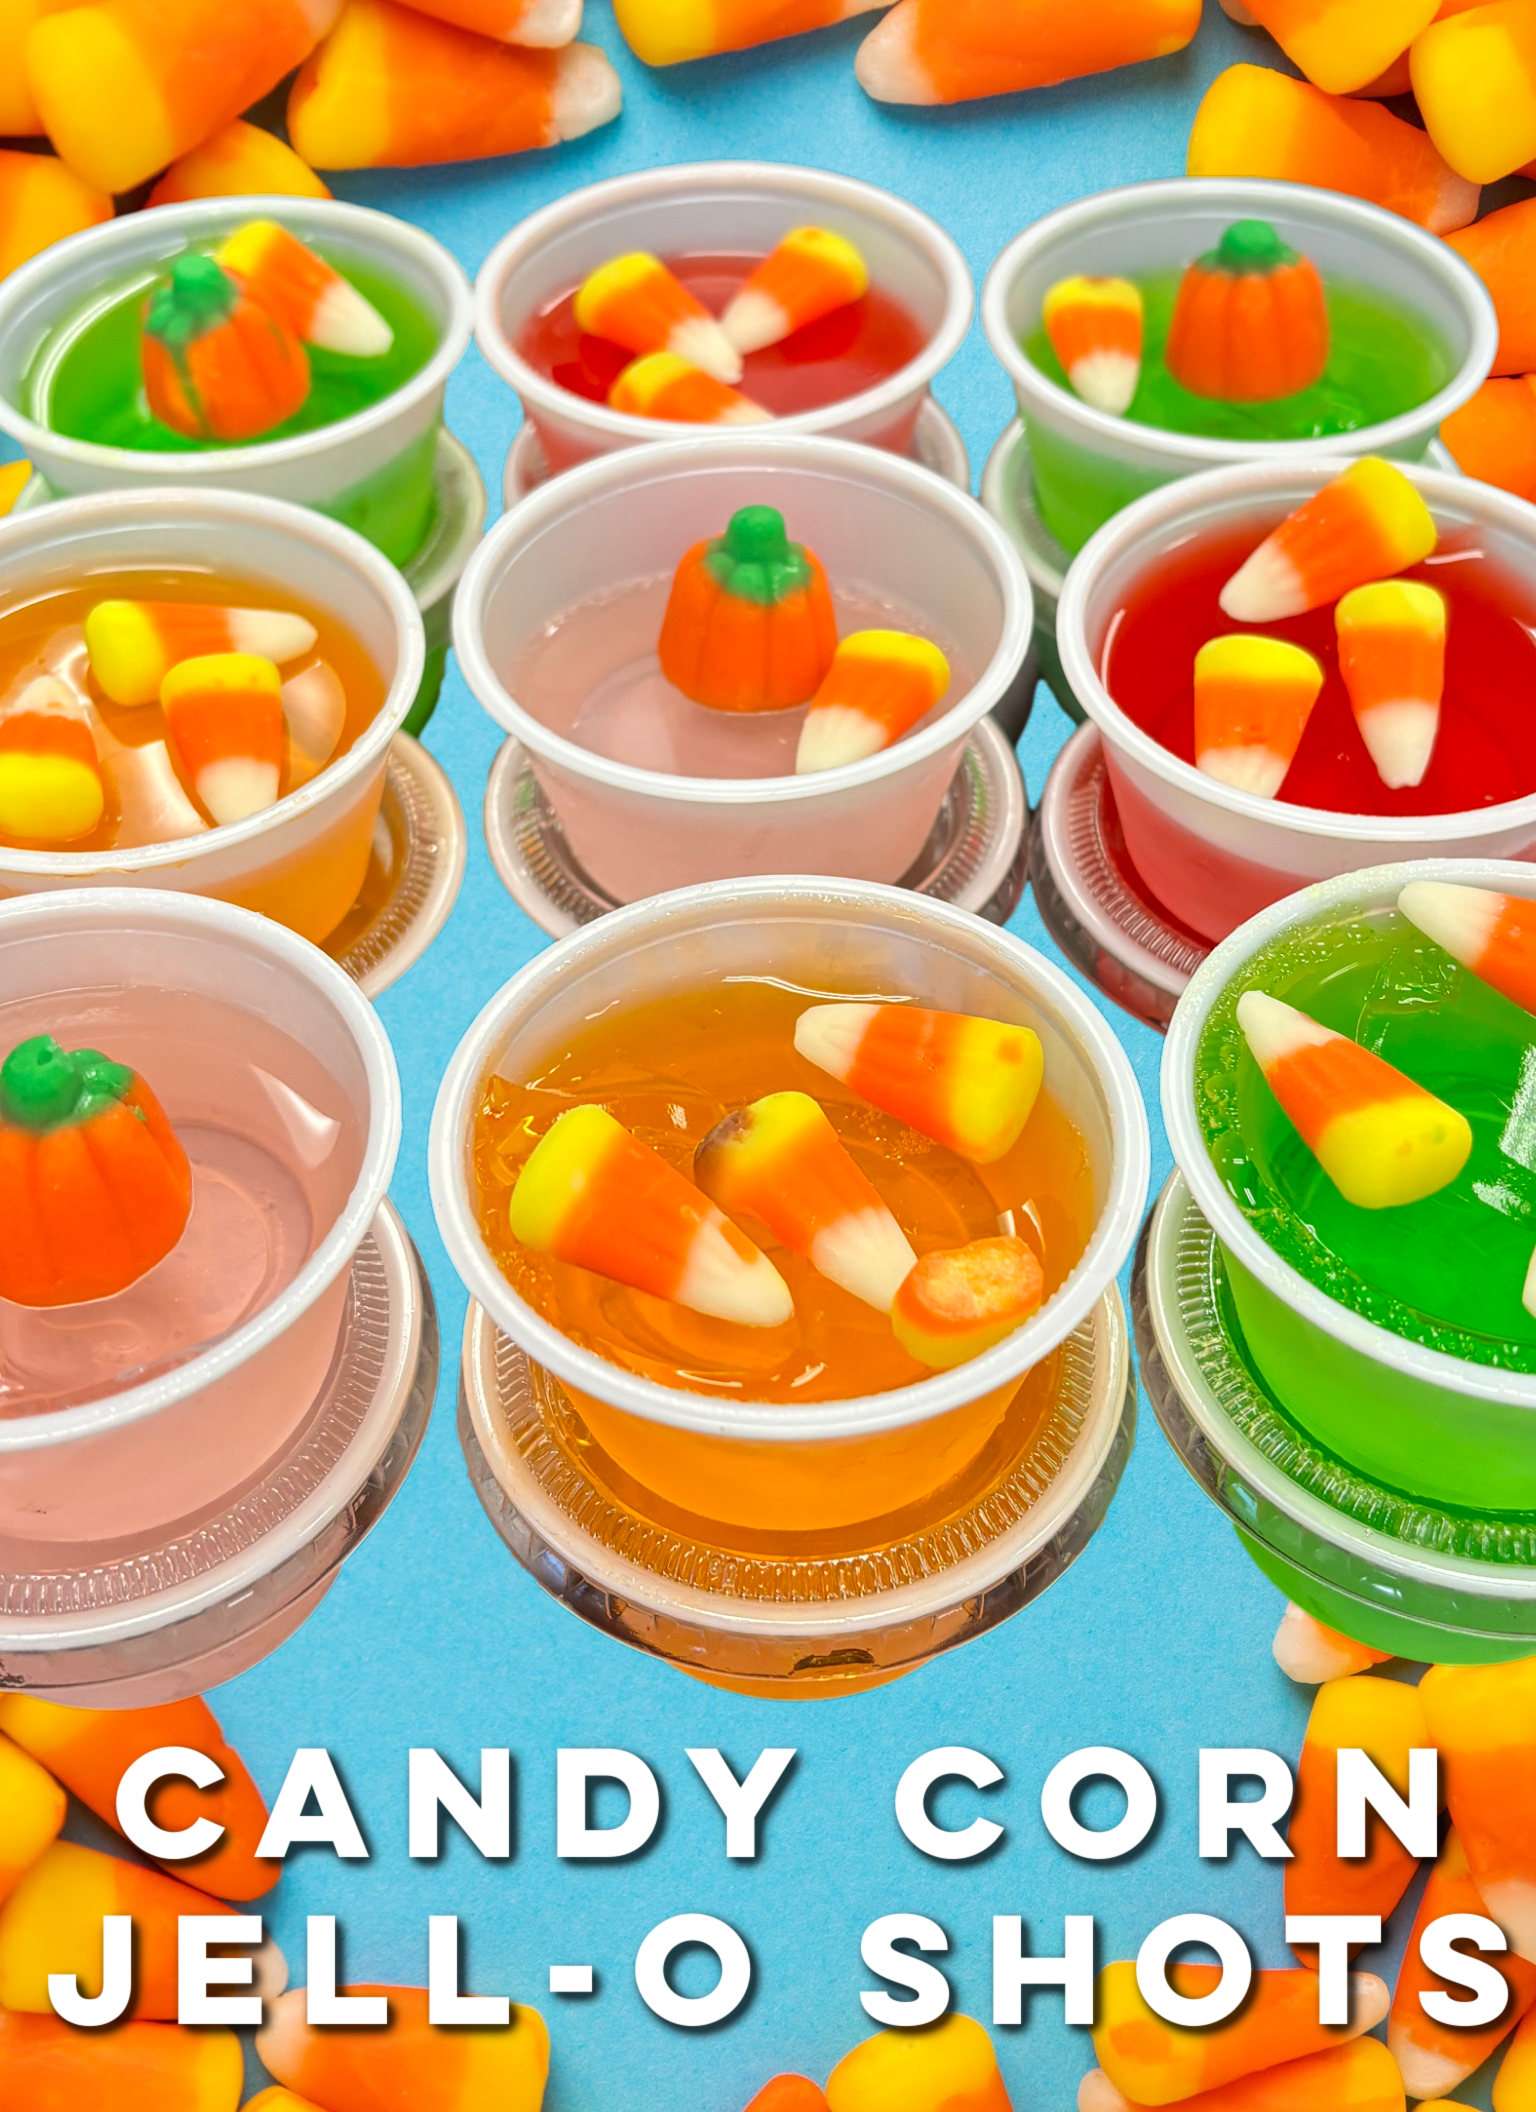 Candy Corn Jell-O Shots